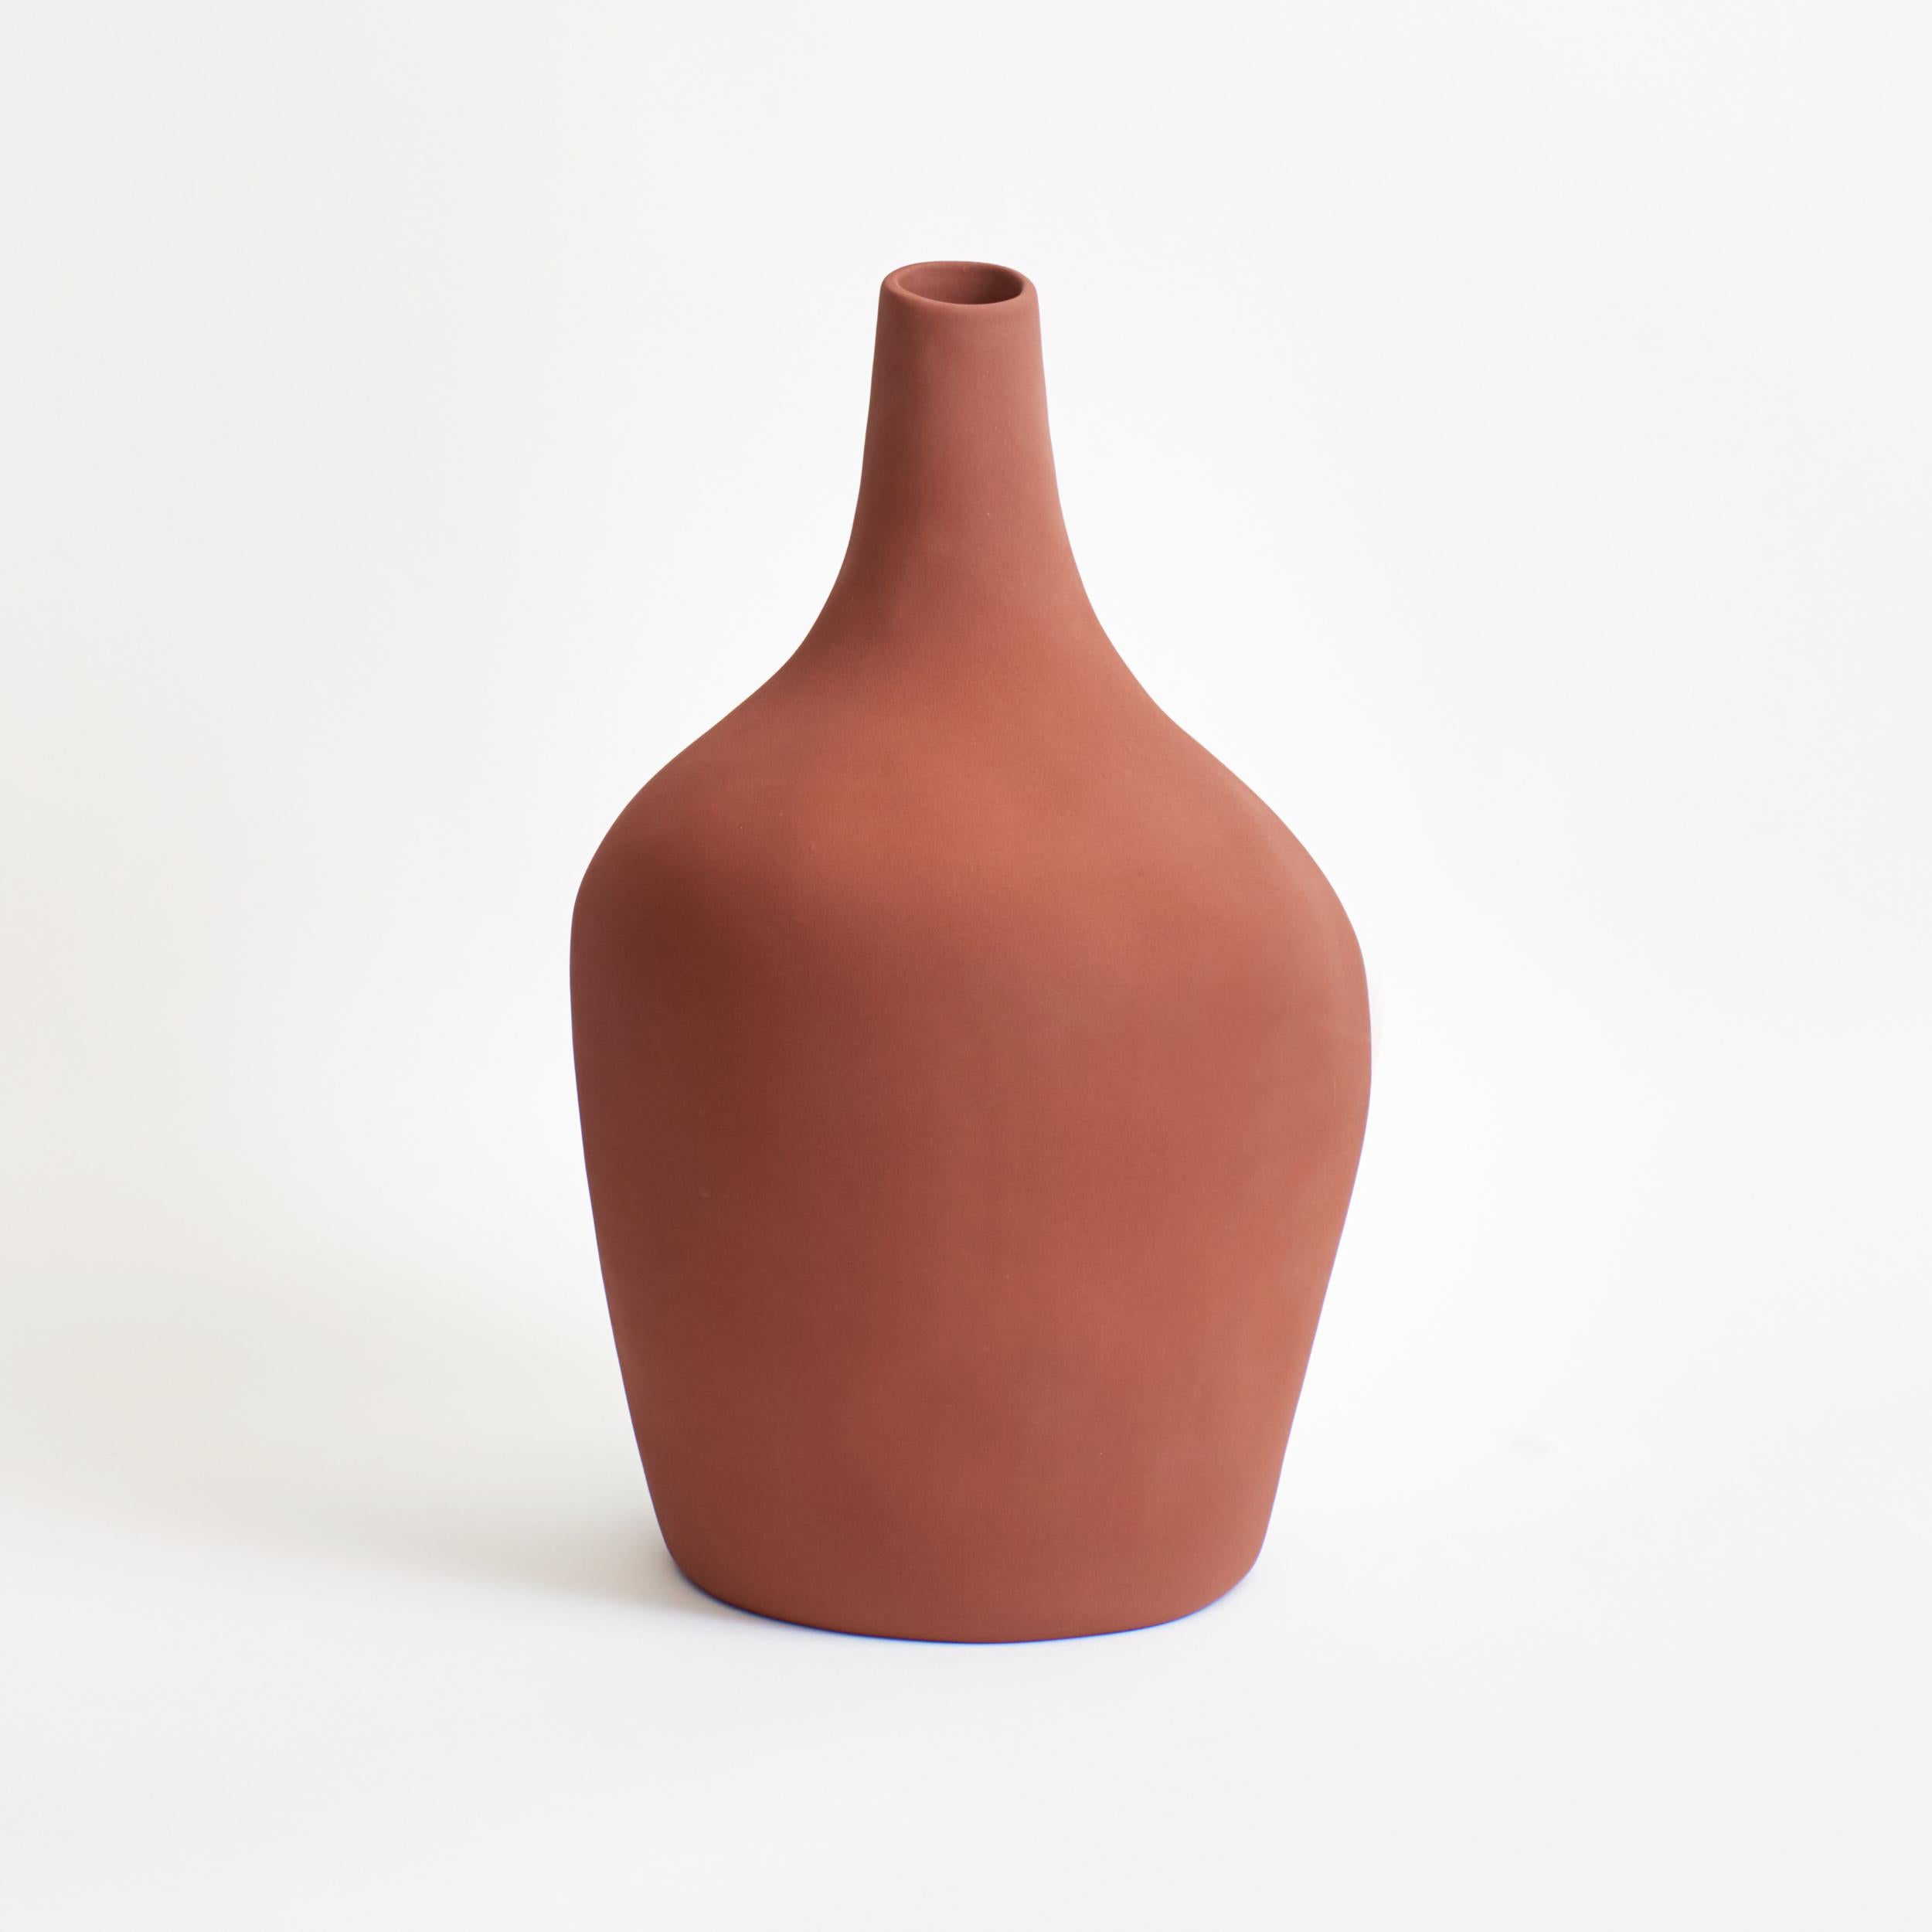 Die Vase Sailor von project 213A wurde 2020 entworfen und kam 2021 auf den Markt.
Diese Glasur hat eine raue, fast sandige Textur und ist in einer sanften Ziegelfarbe gehalten.
Handgefertigt in Portugal von lokalen Handwerkern.
Diese Vase aus